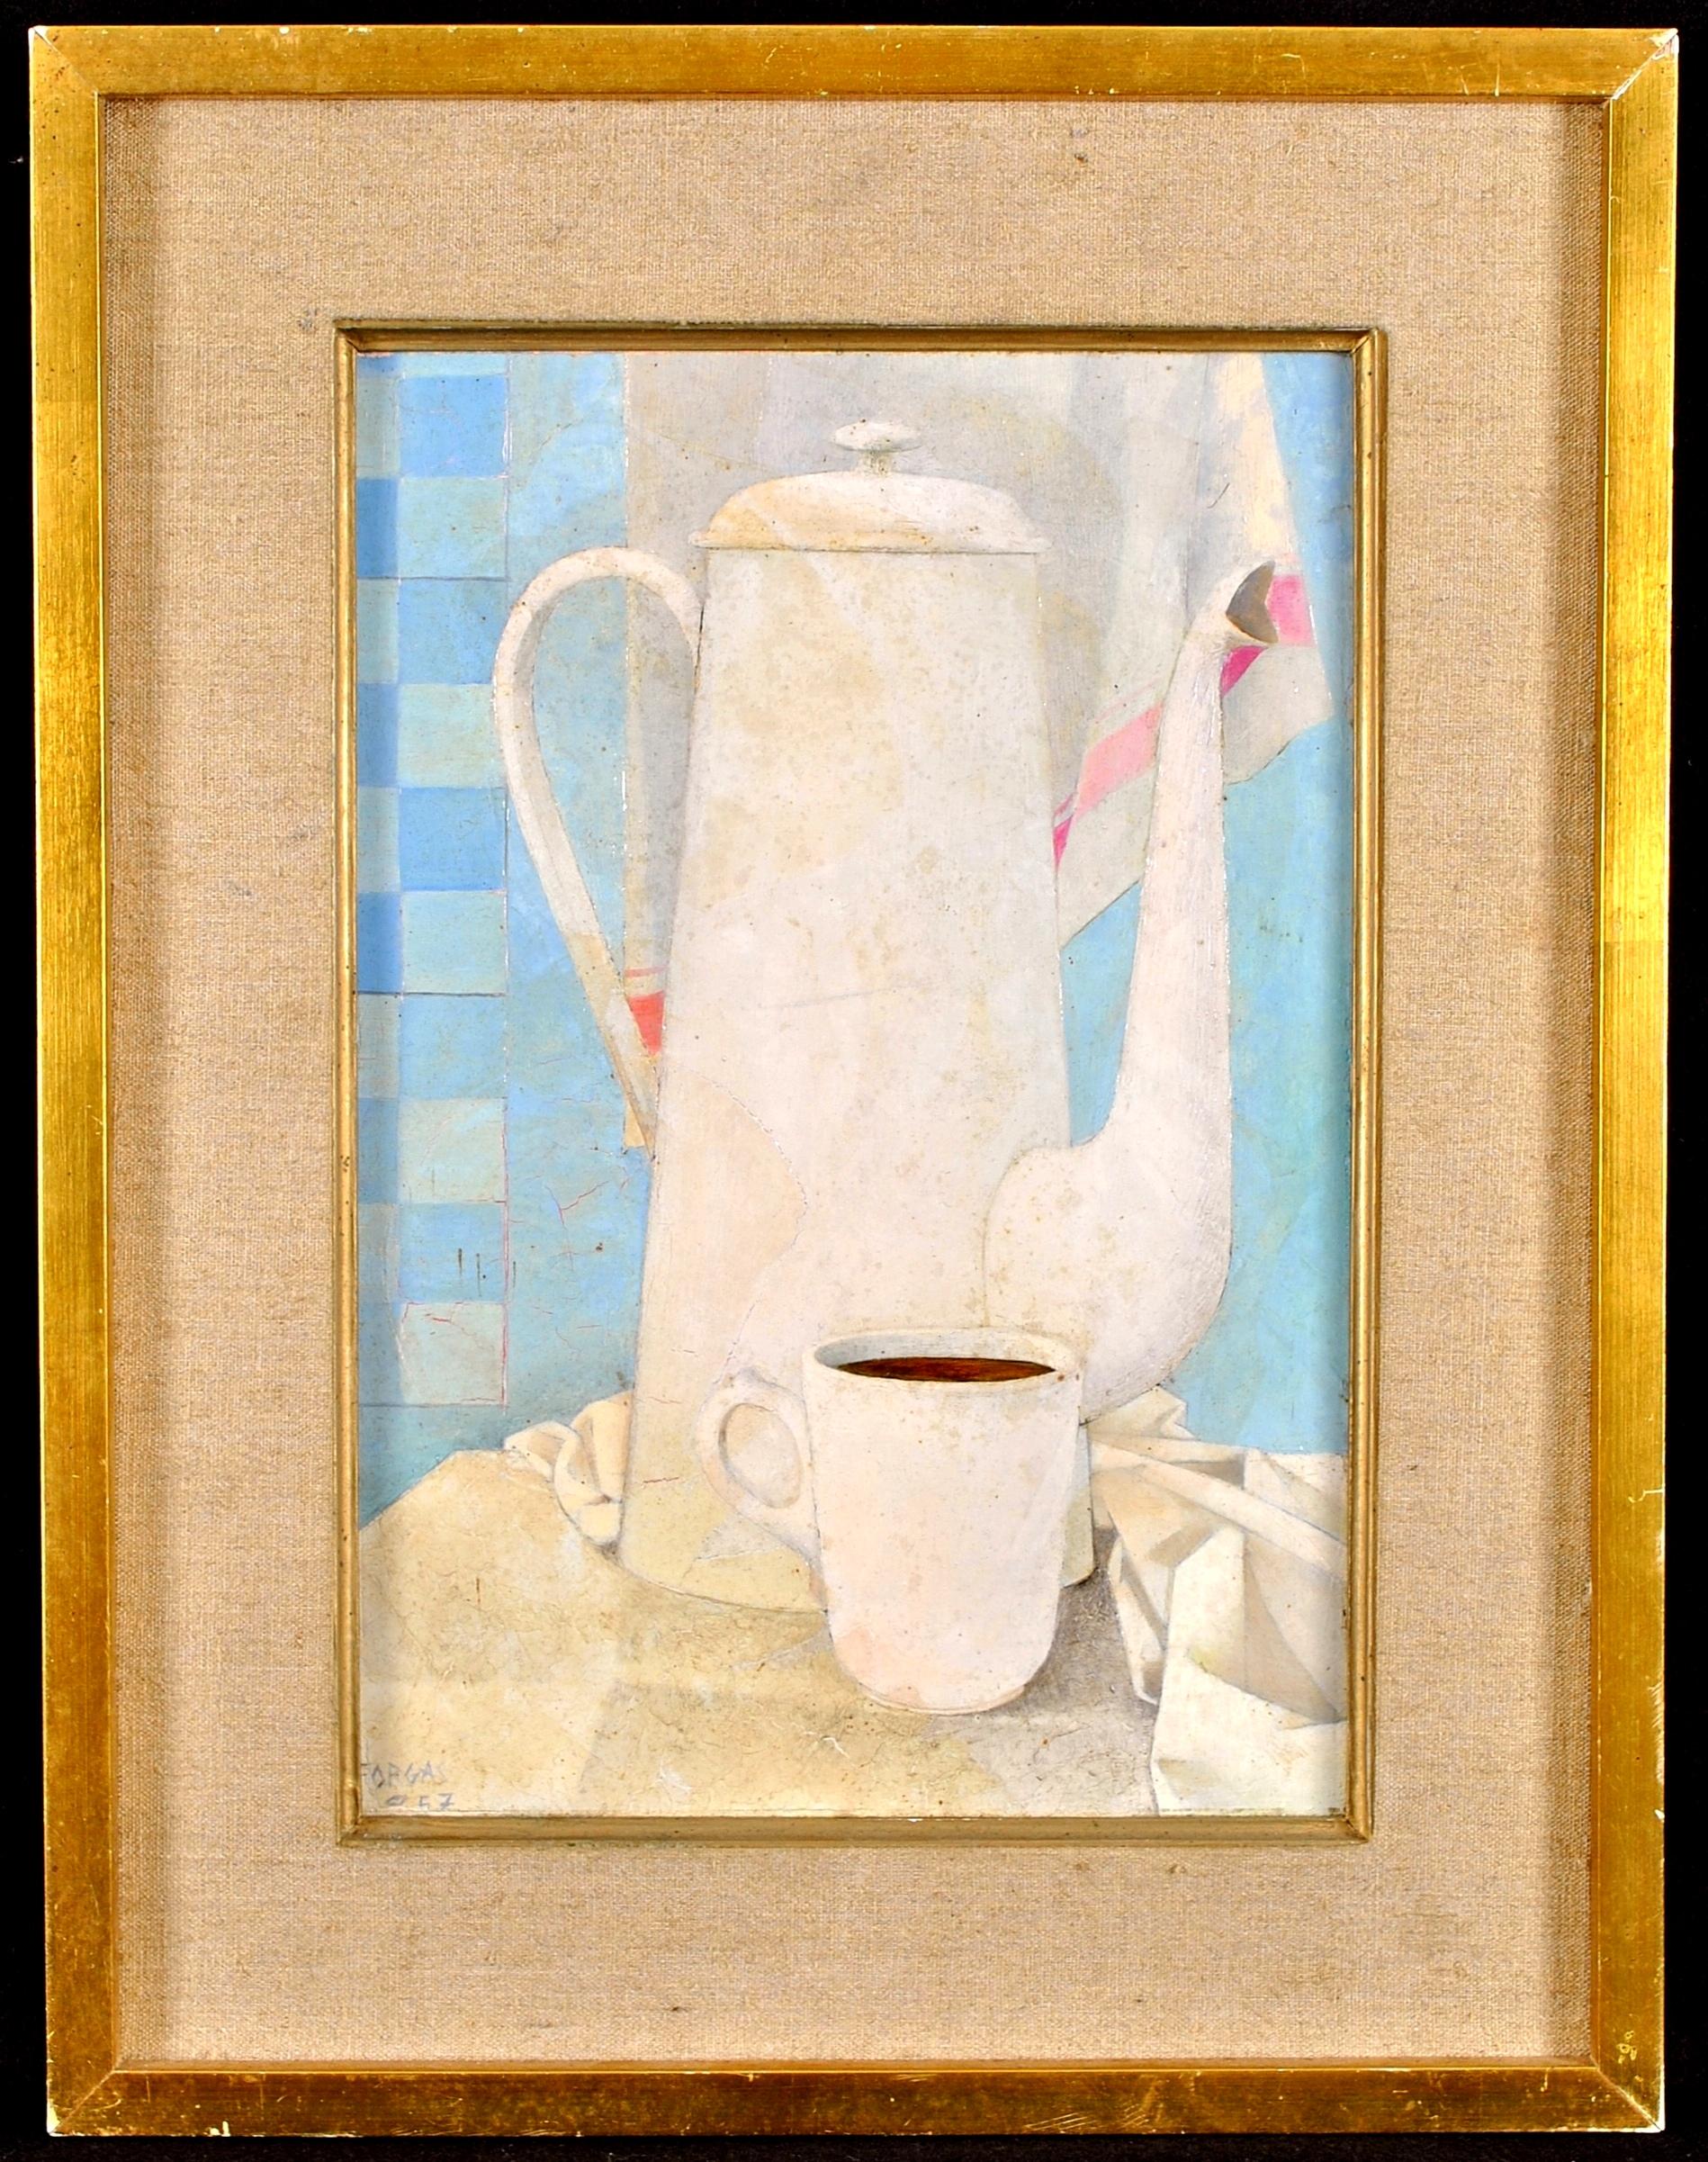 Still-Life Painting Mid 20th Century French School - Cafetiere Blanche - Peinture à l'huile sur panneau moderniste cubiste du milieu du 20e siècle